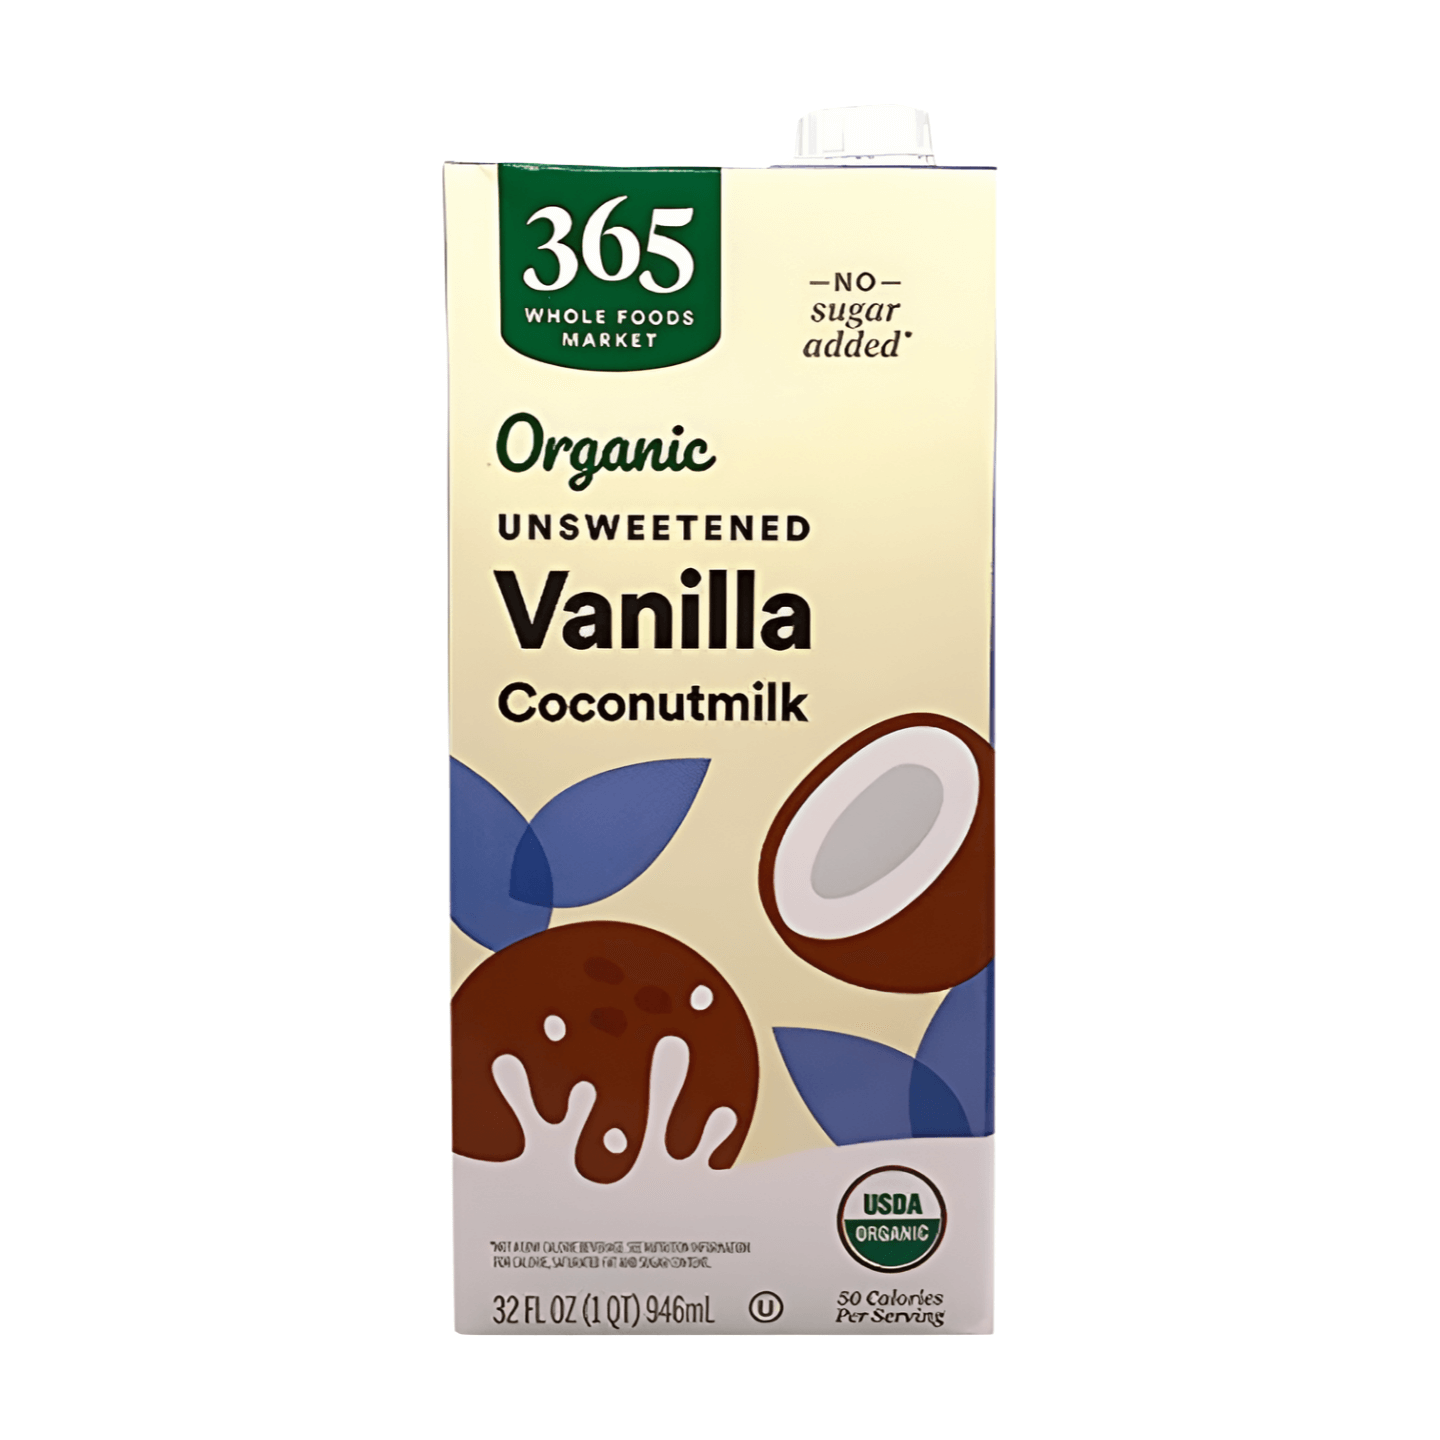 Wholefoods 365 Organic Unsweetened Vanilla Coconutmilk Shelf Stable